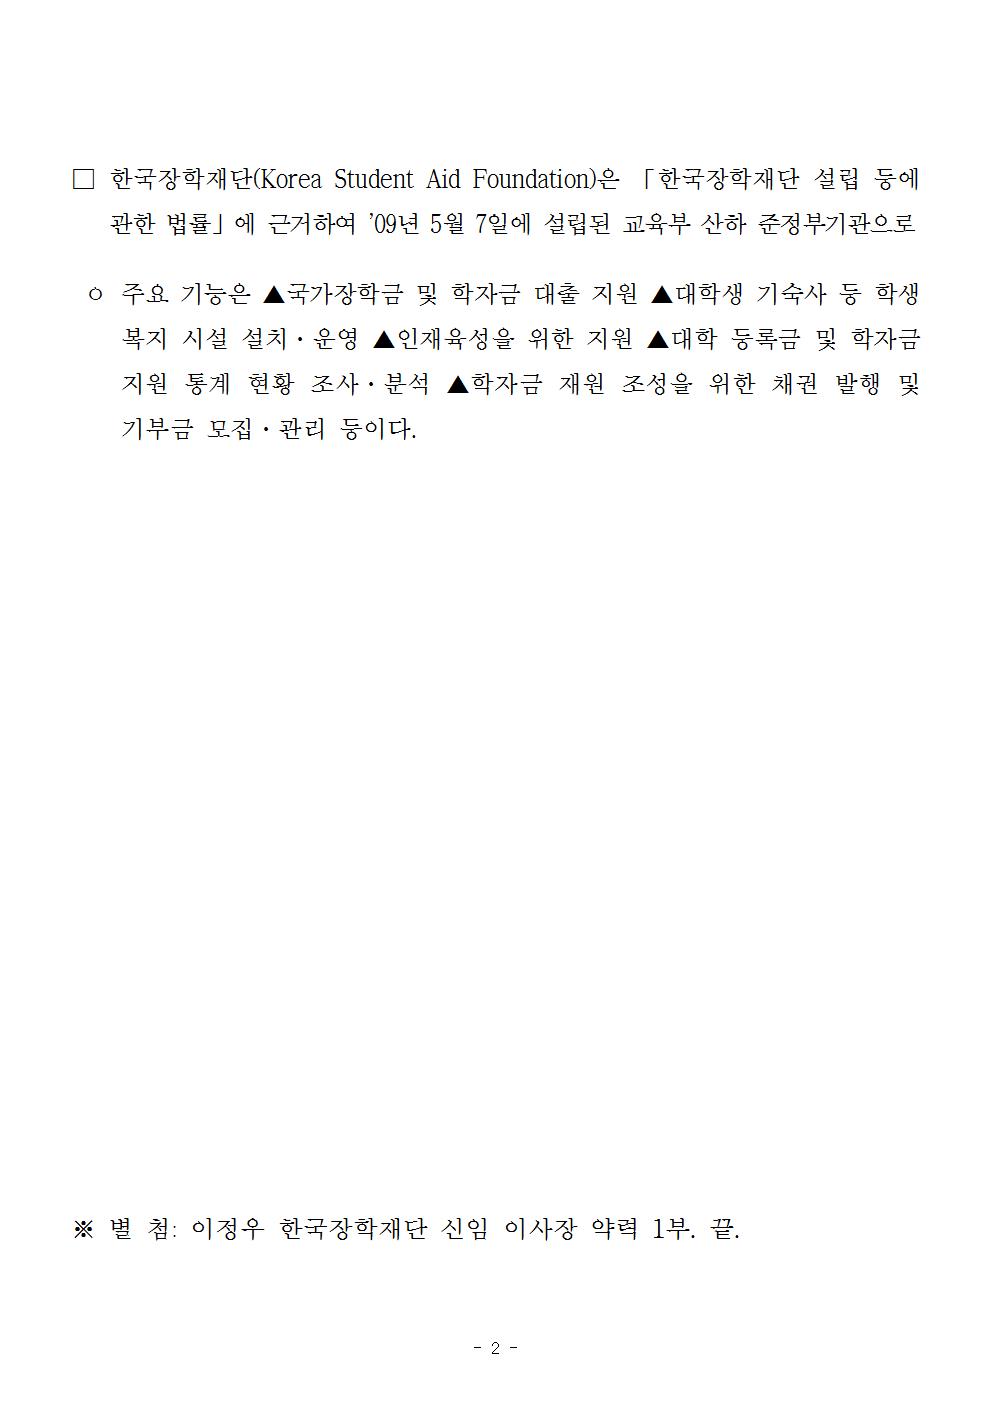 08-13(월)[보도자료] 제4대 한국장학재단 이사장 이정우 선임002.jpg